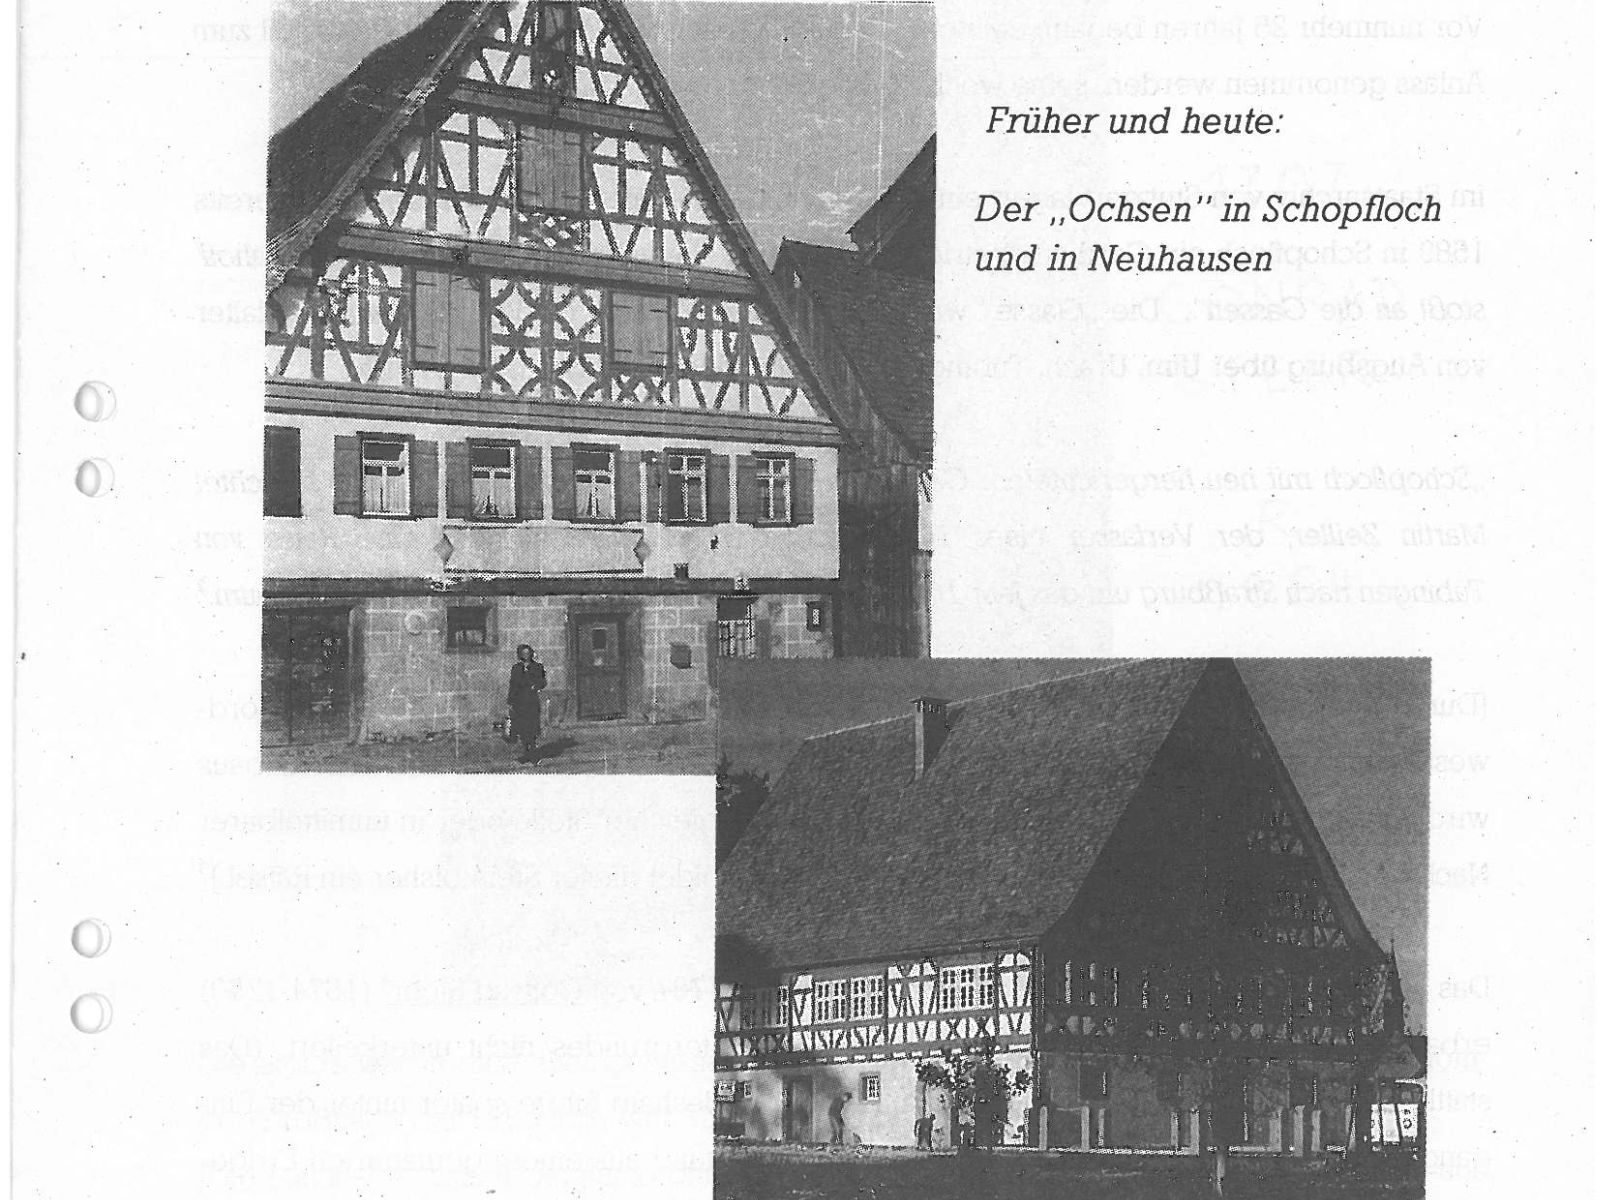  Schopflocher Skizzen Früher und heute: Der "Ochsen" in Schopfloch und in Neuhausen - Bild wird mit einem Klick vergrößert 